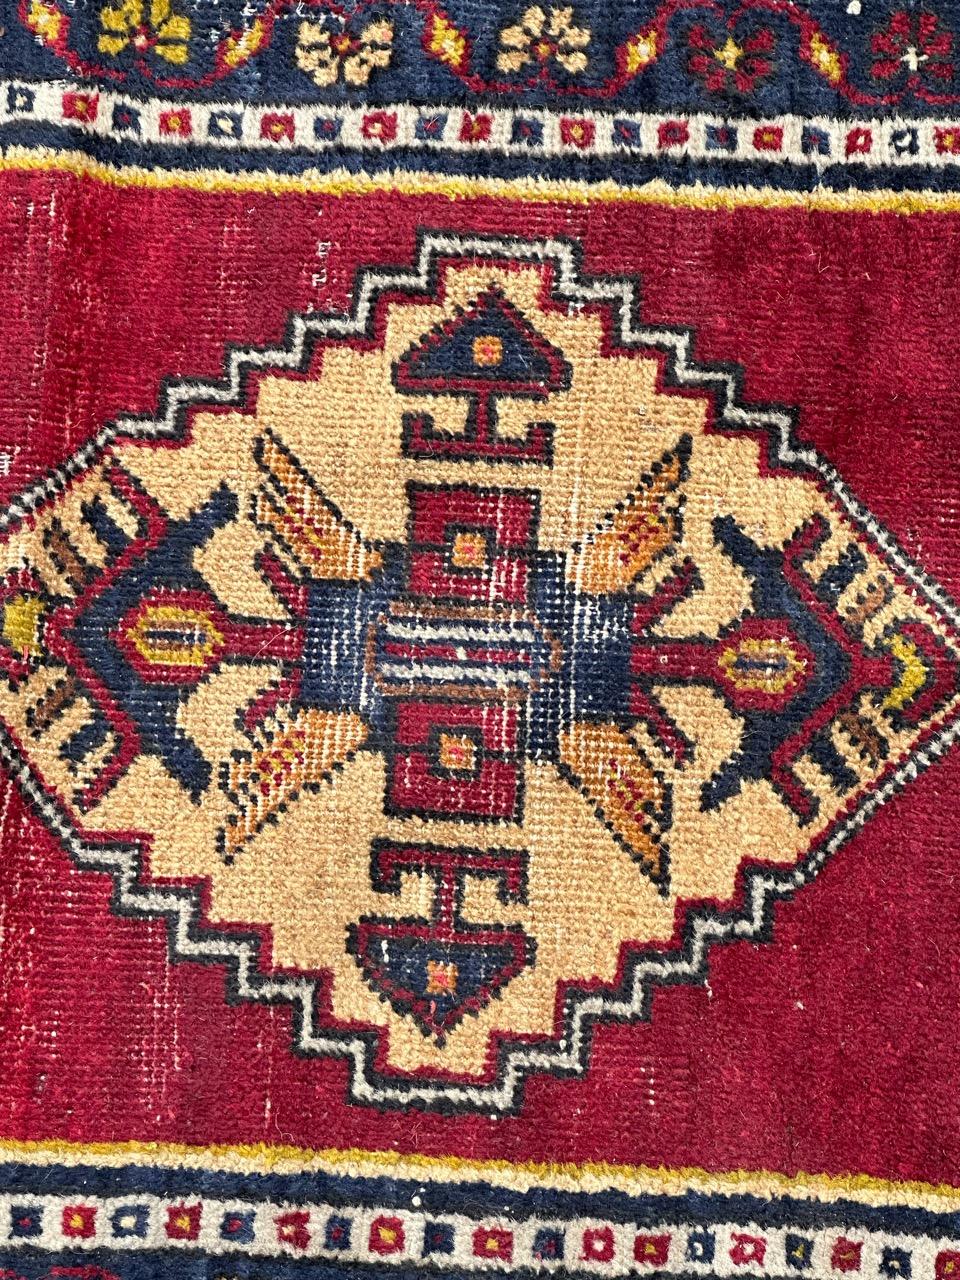 Joli tapis turc Yastik du milieu du siècle avec de beaux motifs géométriques et de belles couleurs avec du rouge, du jaune, de l'orange, du bleu marine, du vert et du blanc, entièrement noué à la main avec de la laine sur une base de laine. Quelques